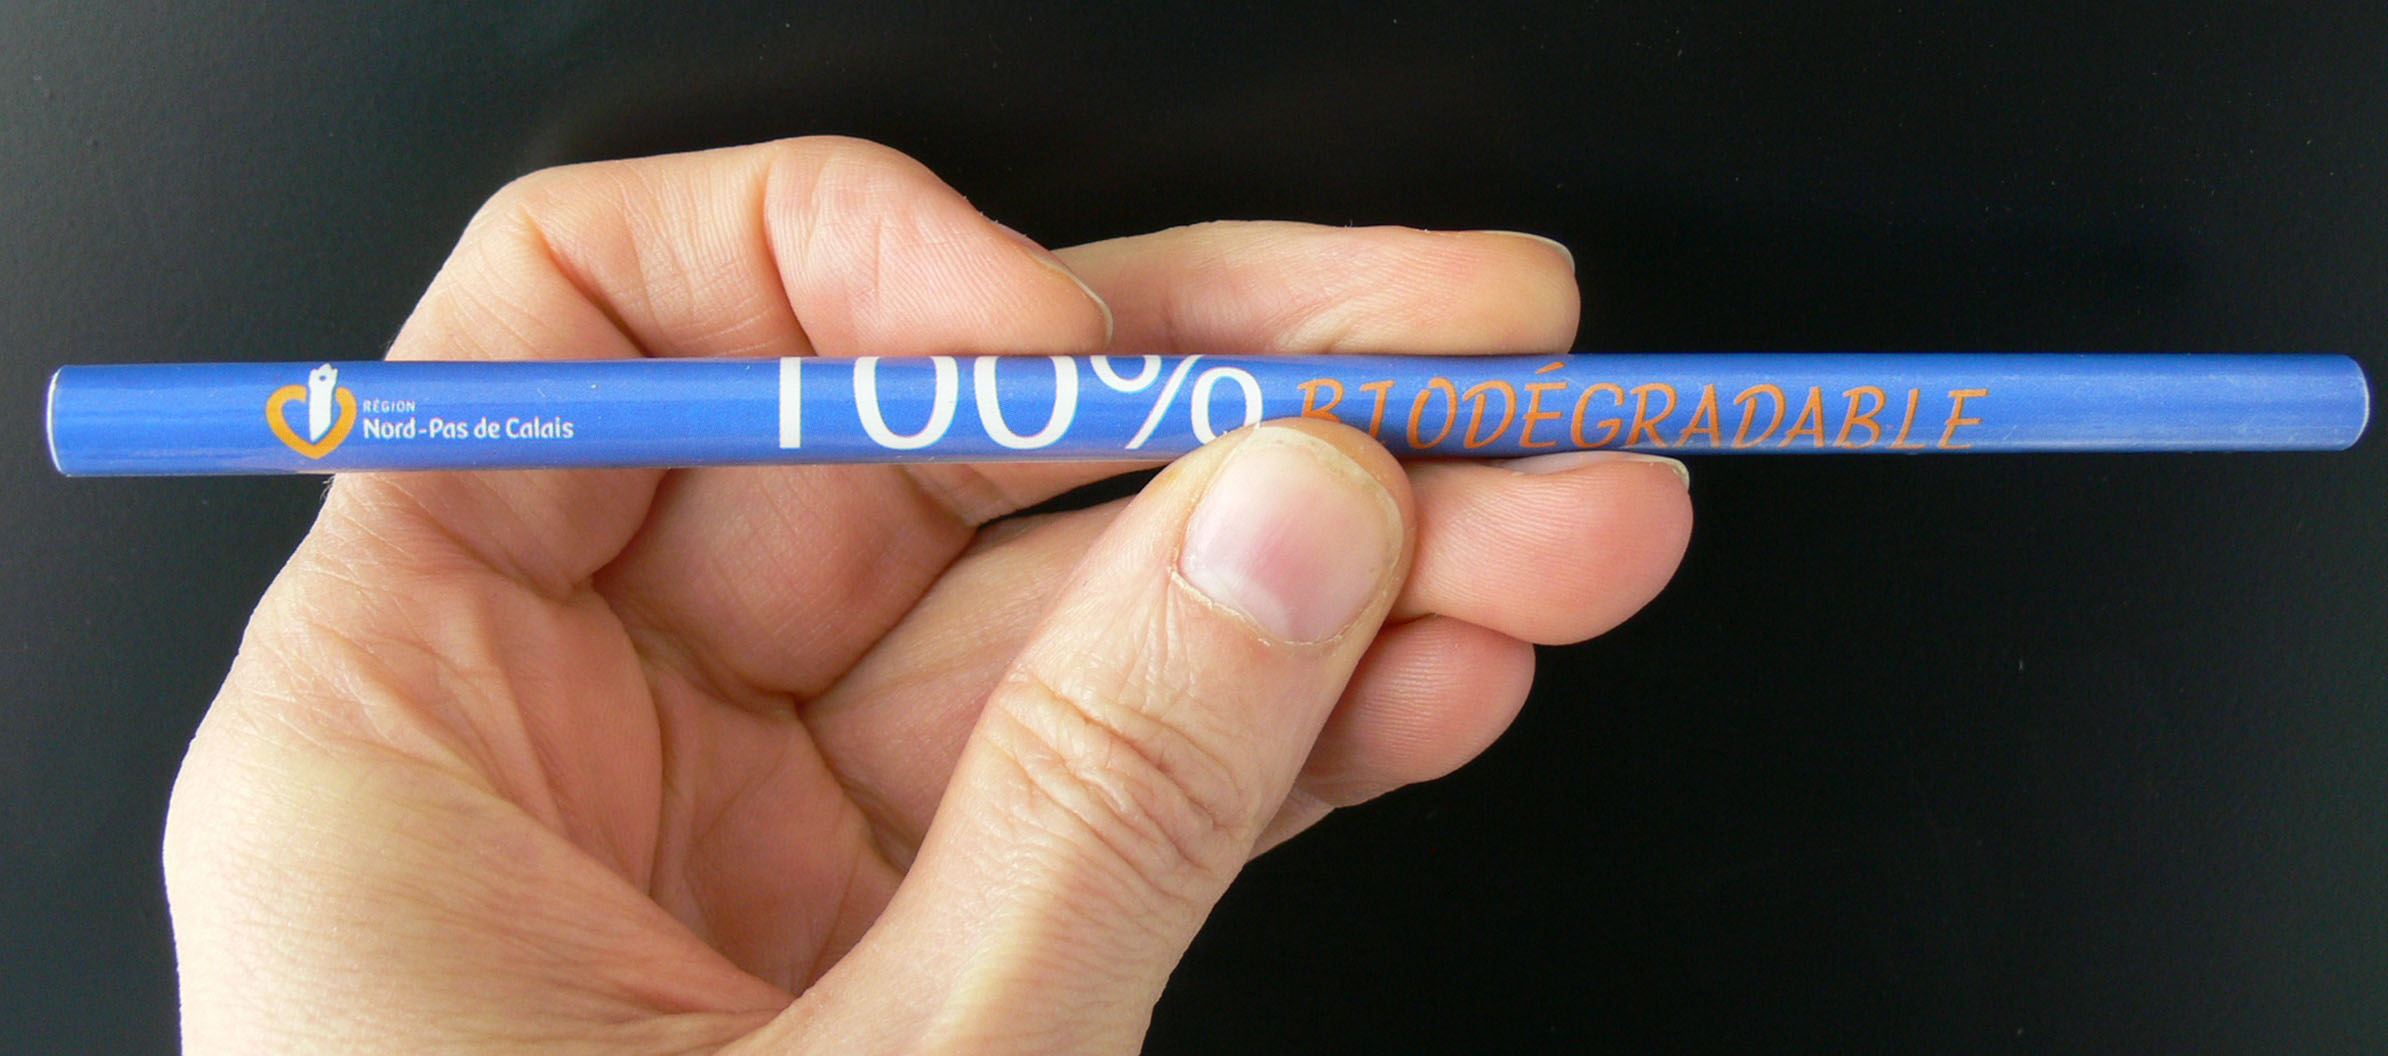 Crayon biodégradable dont le corps est constitué de papier.&nbsp;© Lamiot, Wikimedia, cc by sa 3.0